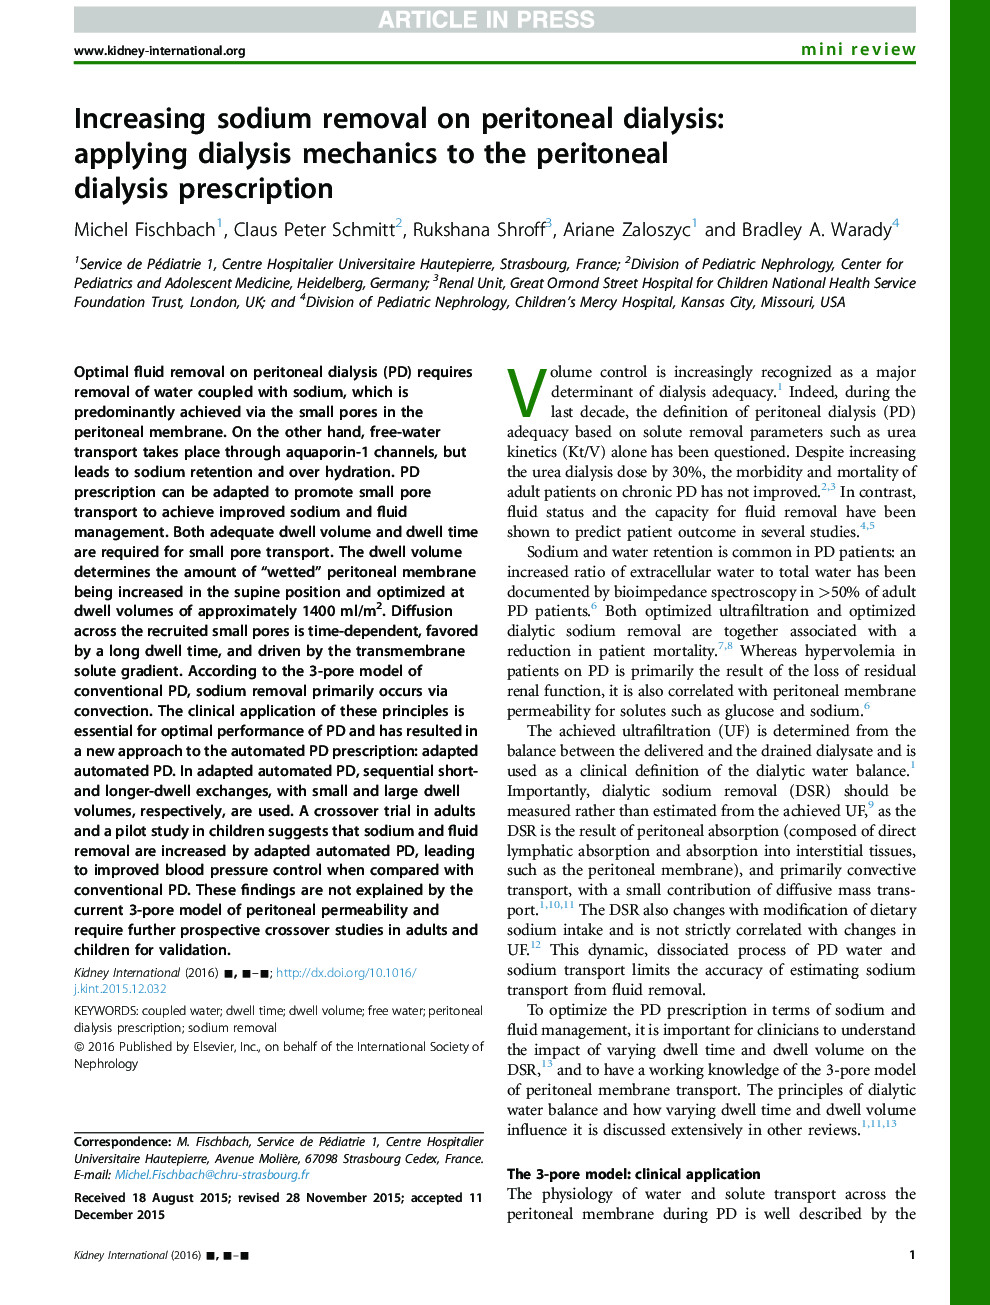 افزایش سدیم بر روی دیالیز صفاقی: استفاده از مکانیک دیالیز به نسخه دیالیز صفاقی 